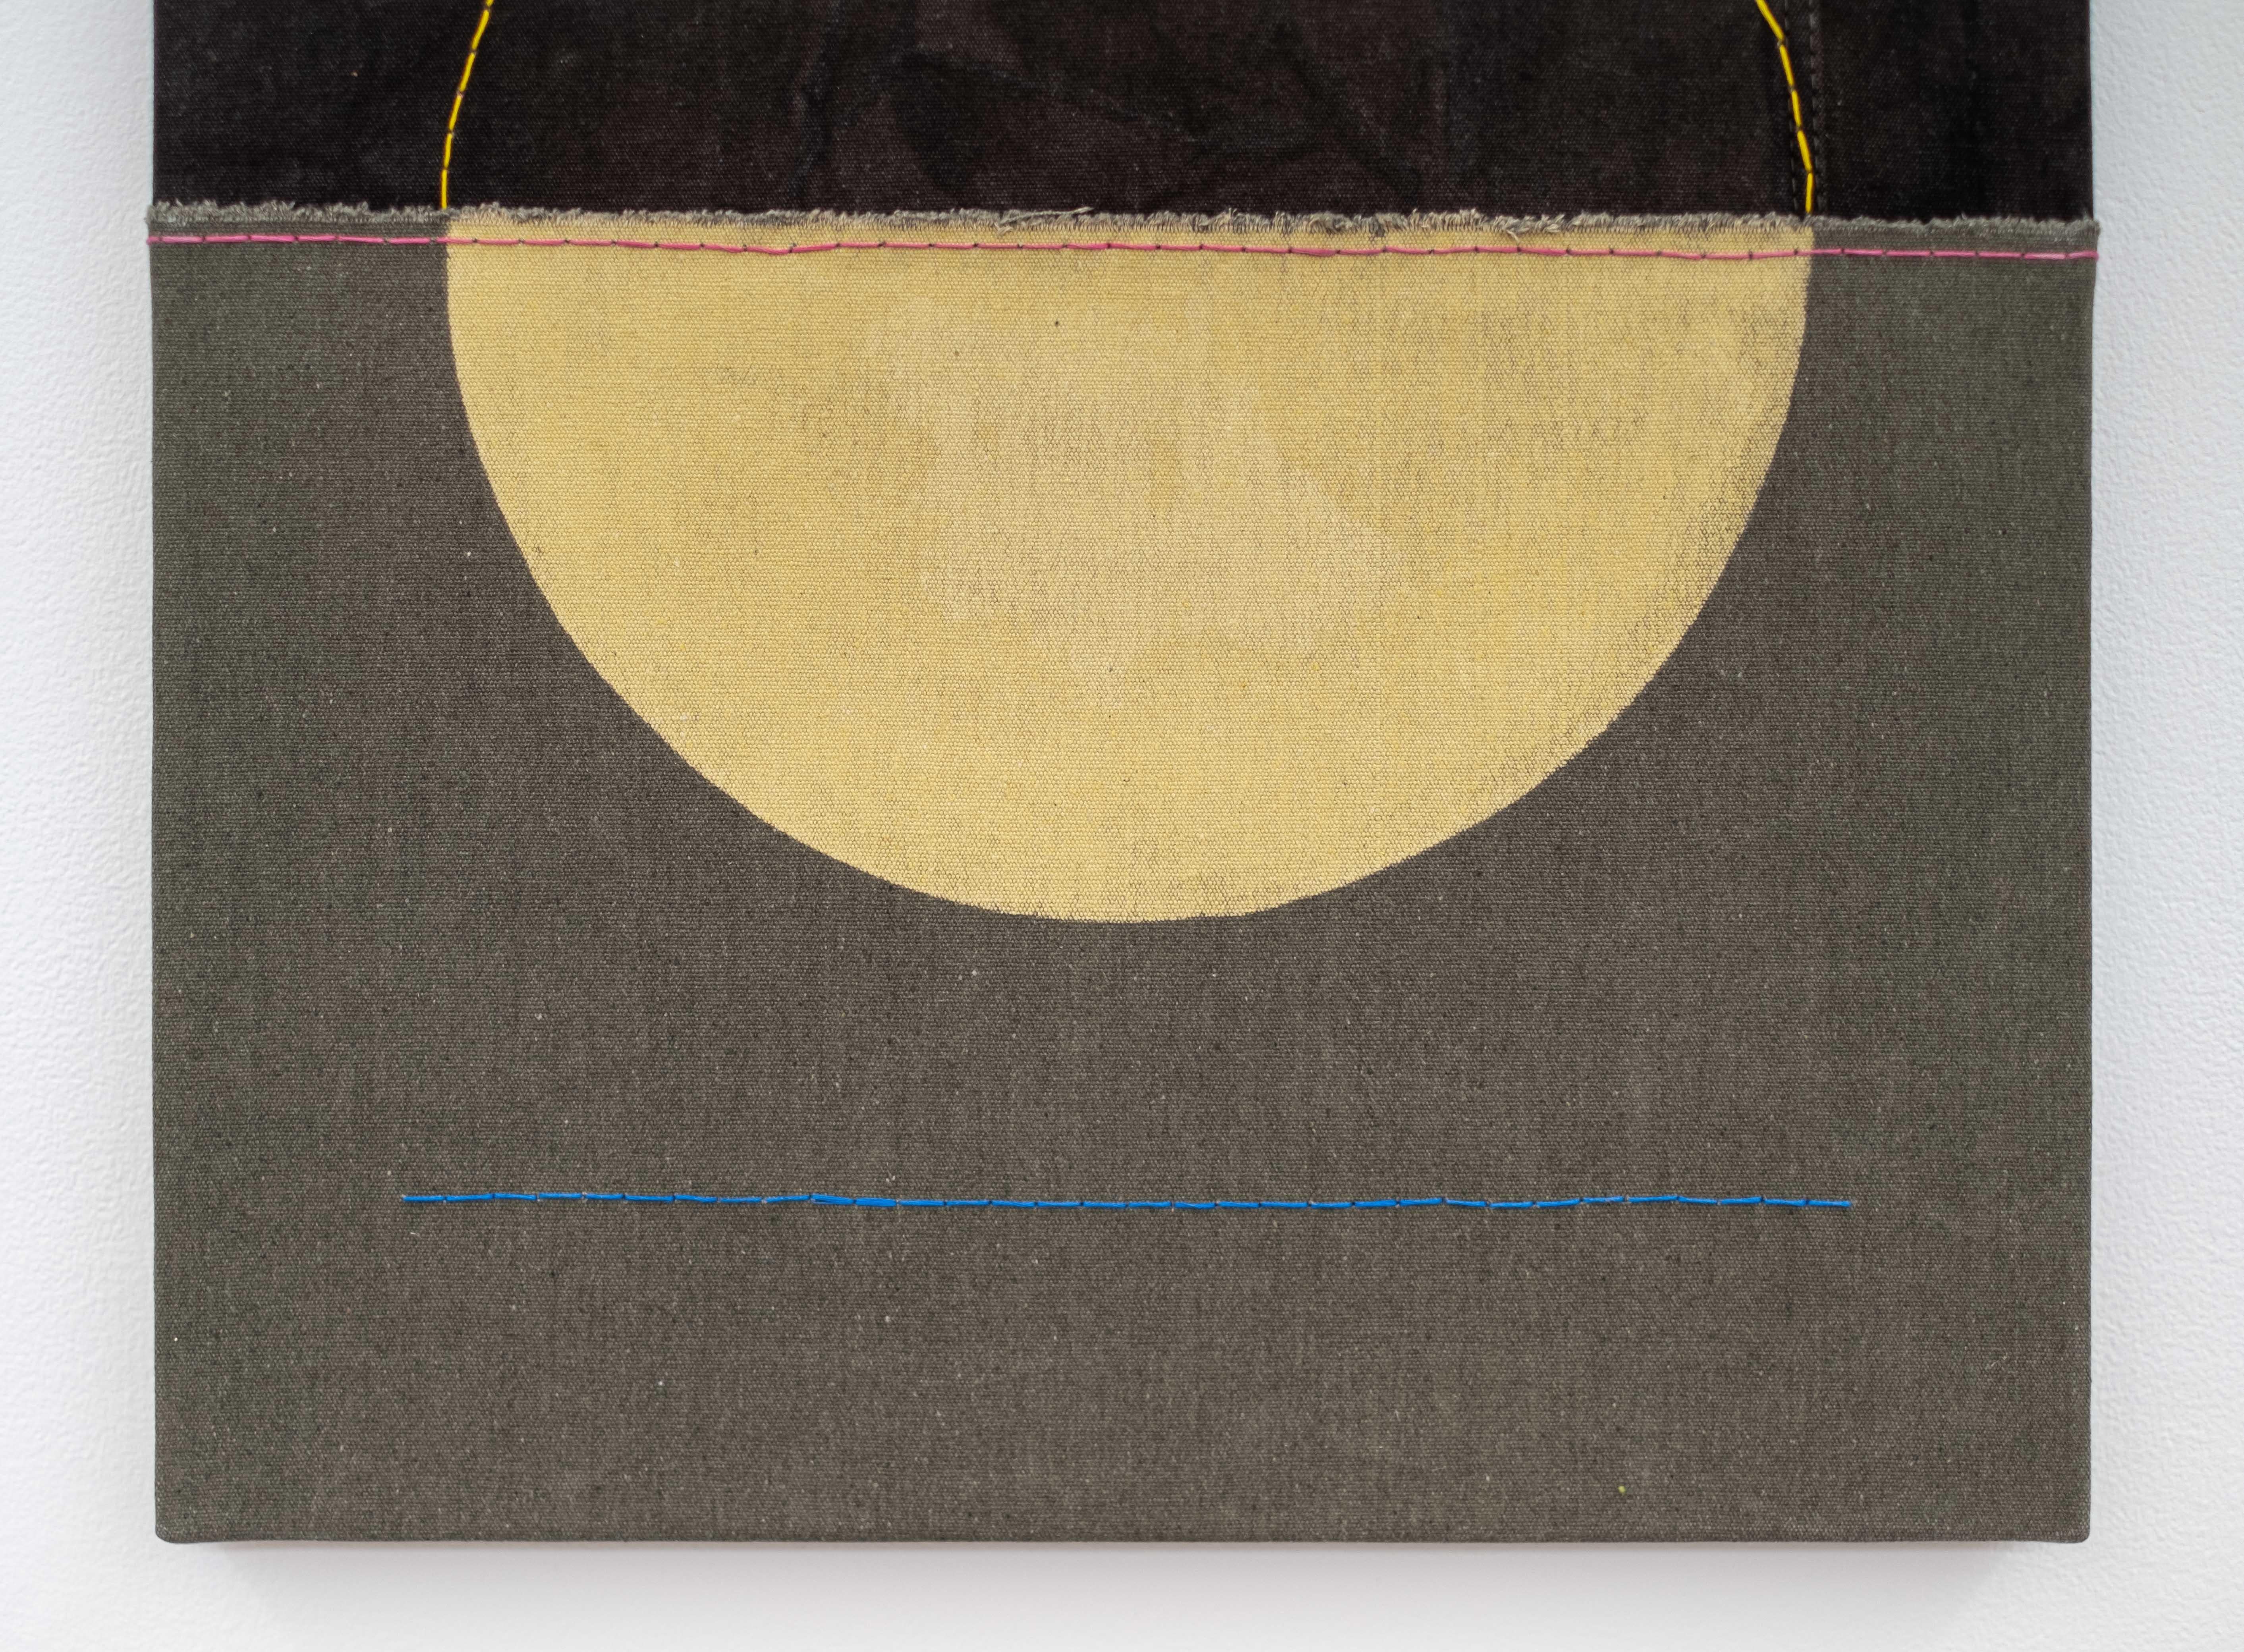 L'artiste canadien Aron Hille est connu pour ses formes minimalistes uniques et son sens intuitif de la couleur. Leurs paysages reprennent souvent les thèmes familiers du soleil, de la lune et des espaces vides qui rappellent les prairies. Dans